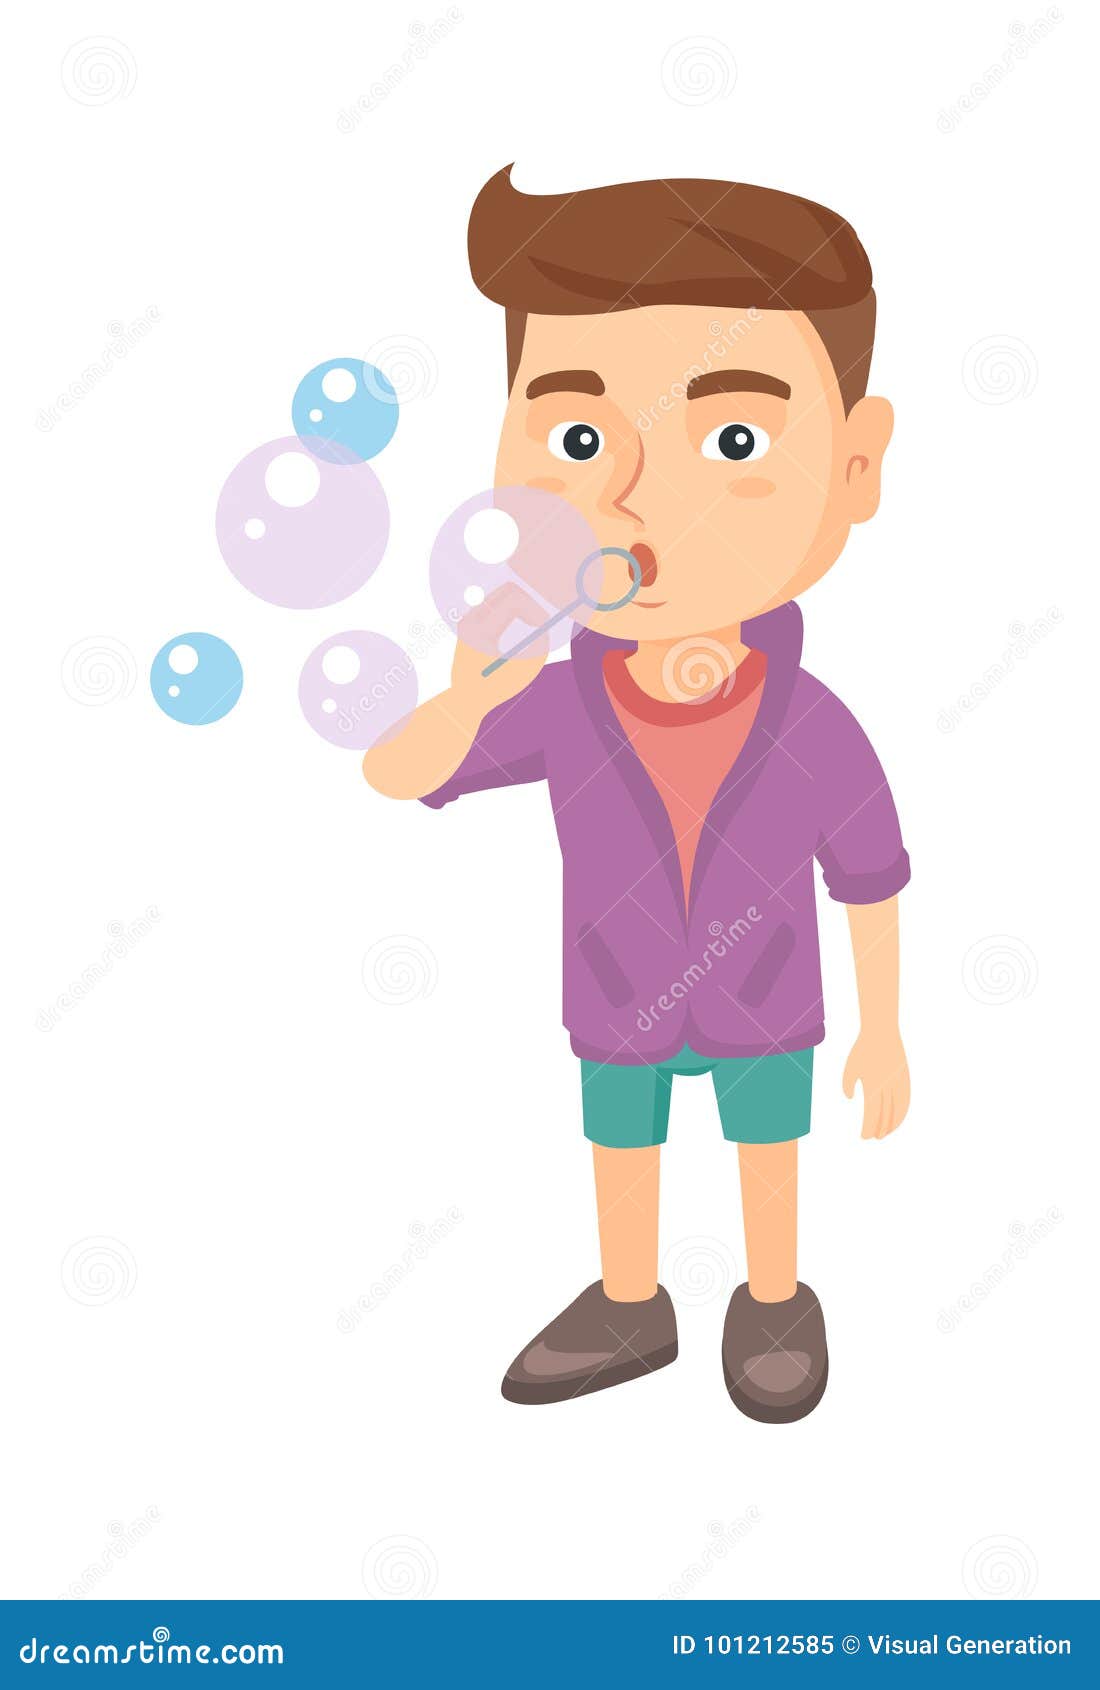 Schlagseifenblasen des kleinen kaukasischen Jungen Junge, der Seifenluftblasen bildet Junge, der mit Seifenluftblasen spielt Vector die Skizzenkarikaturillustration, die auf weißem Hintergrund lokalisiert wird